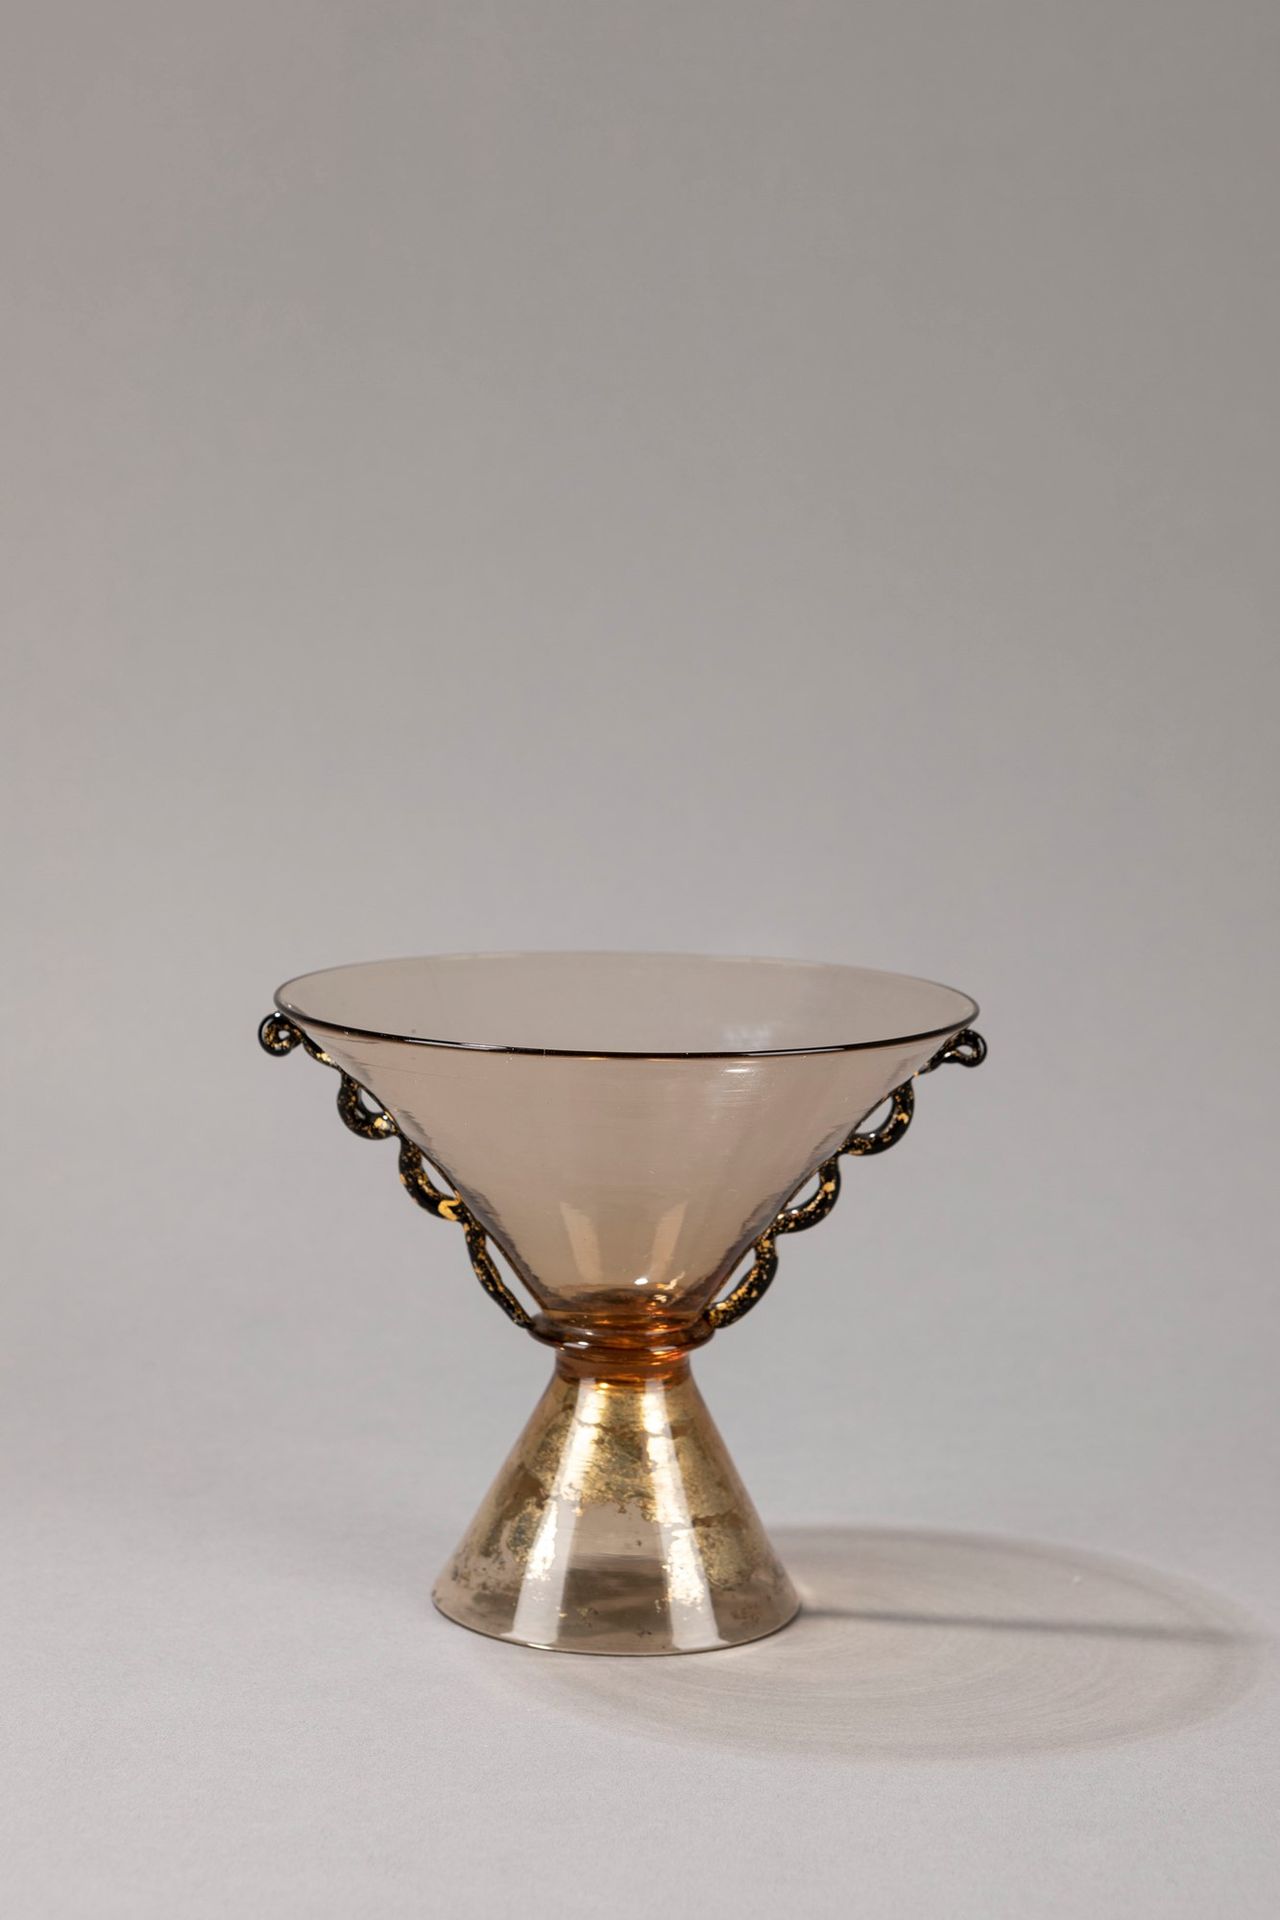 SALIR, Murano Vase, 1930 ca.

H 13 x diam 14 cm
geblasenes Glas, verspiegelter S&hellip;